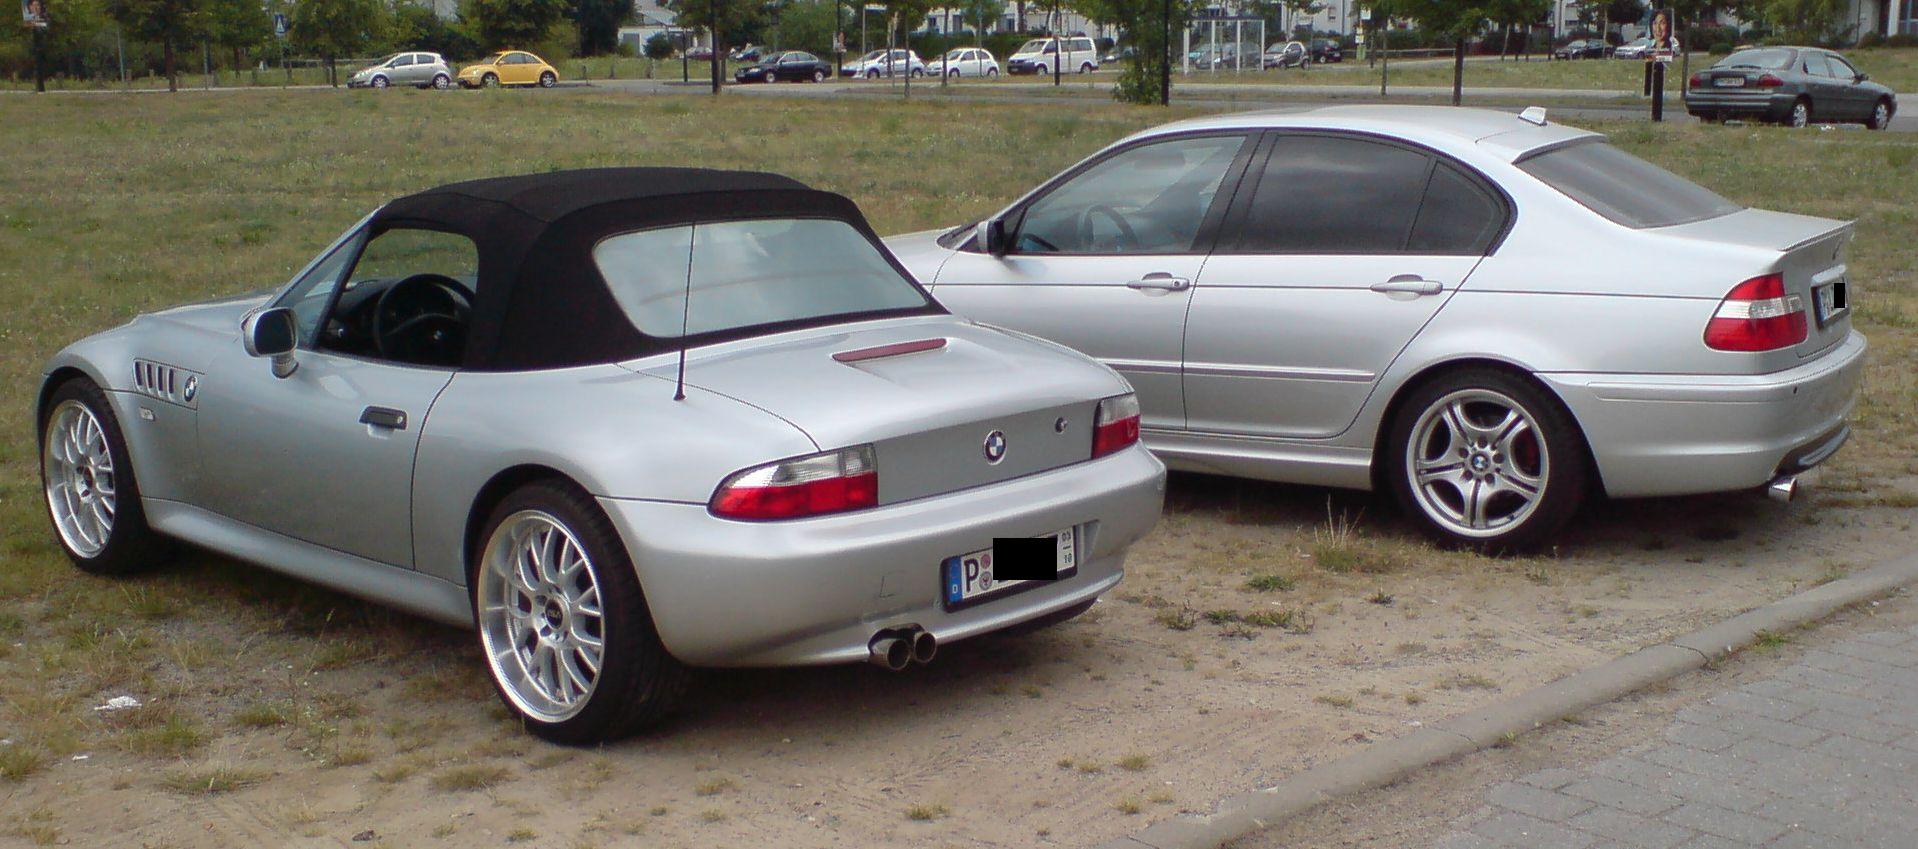 Mein ehemaliges Winterbaby "316i mit M-Sportpaket" - 3er BMW - E46